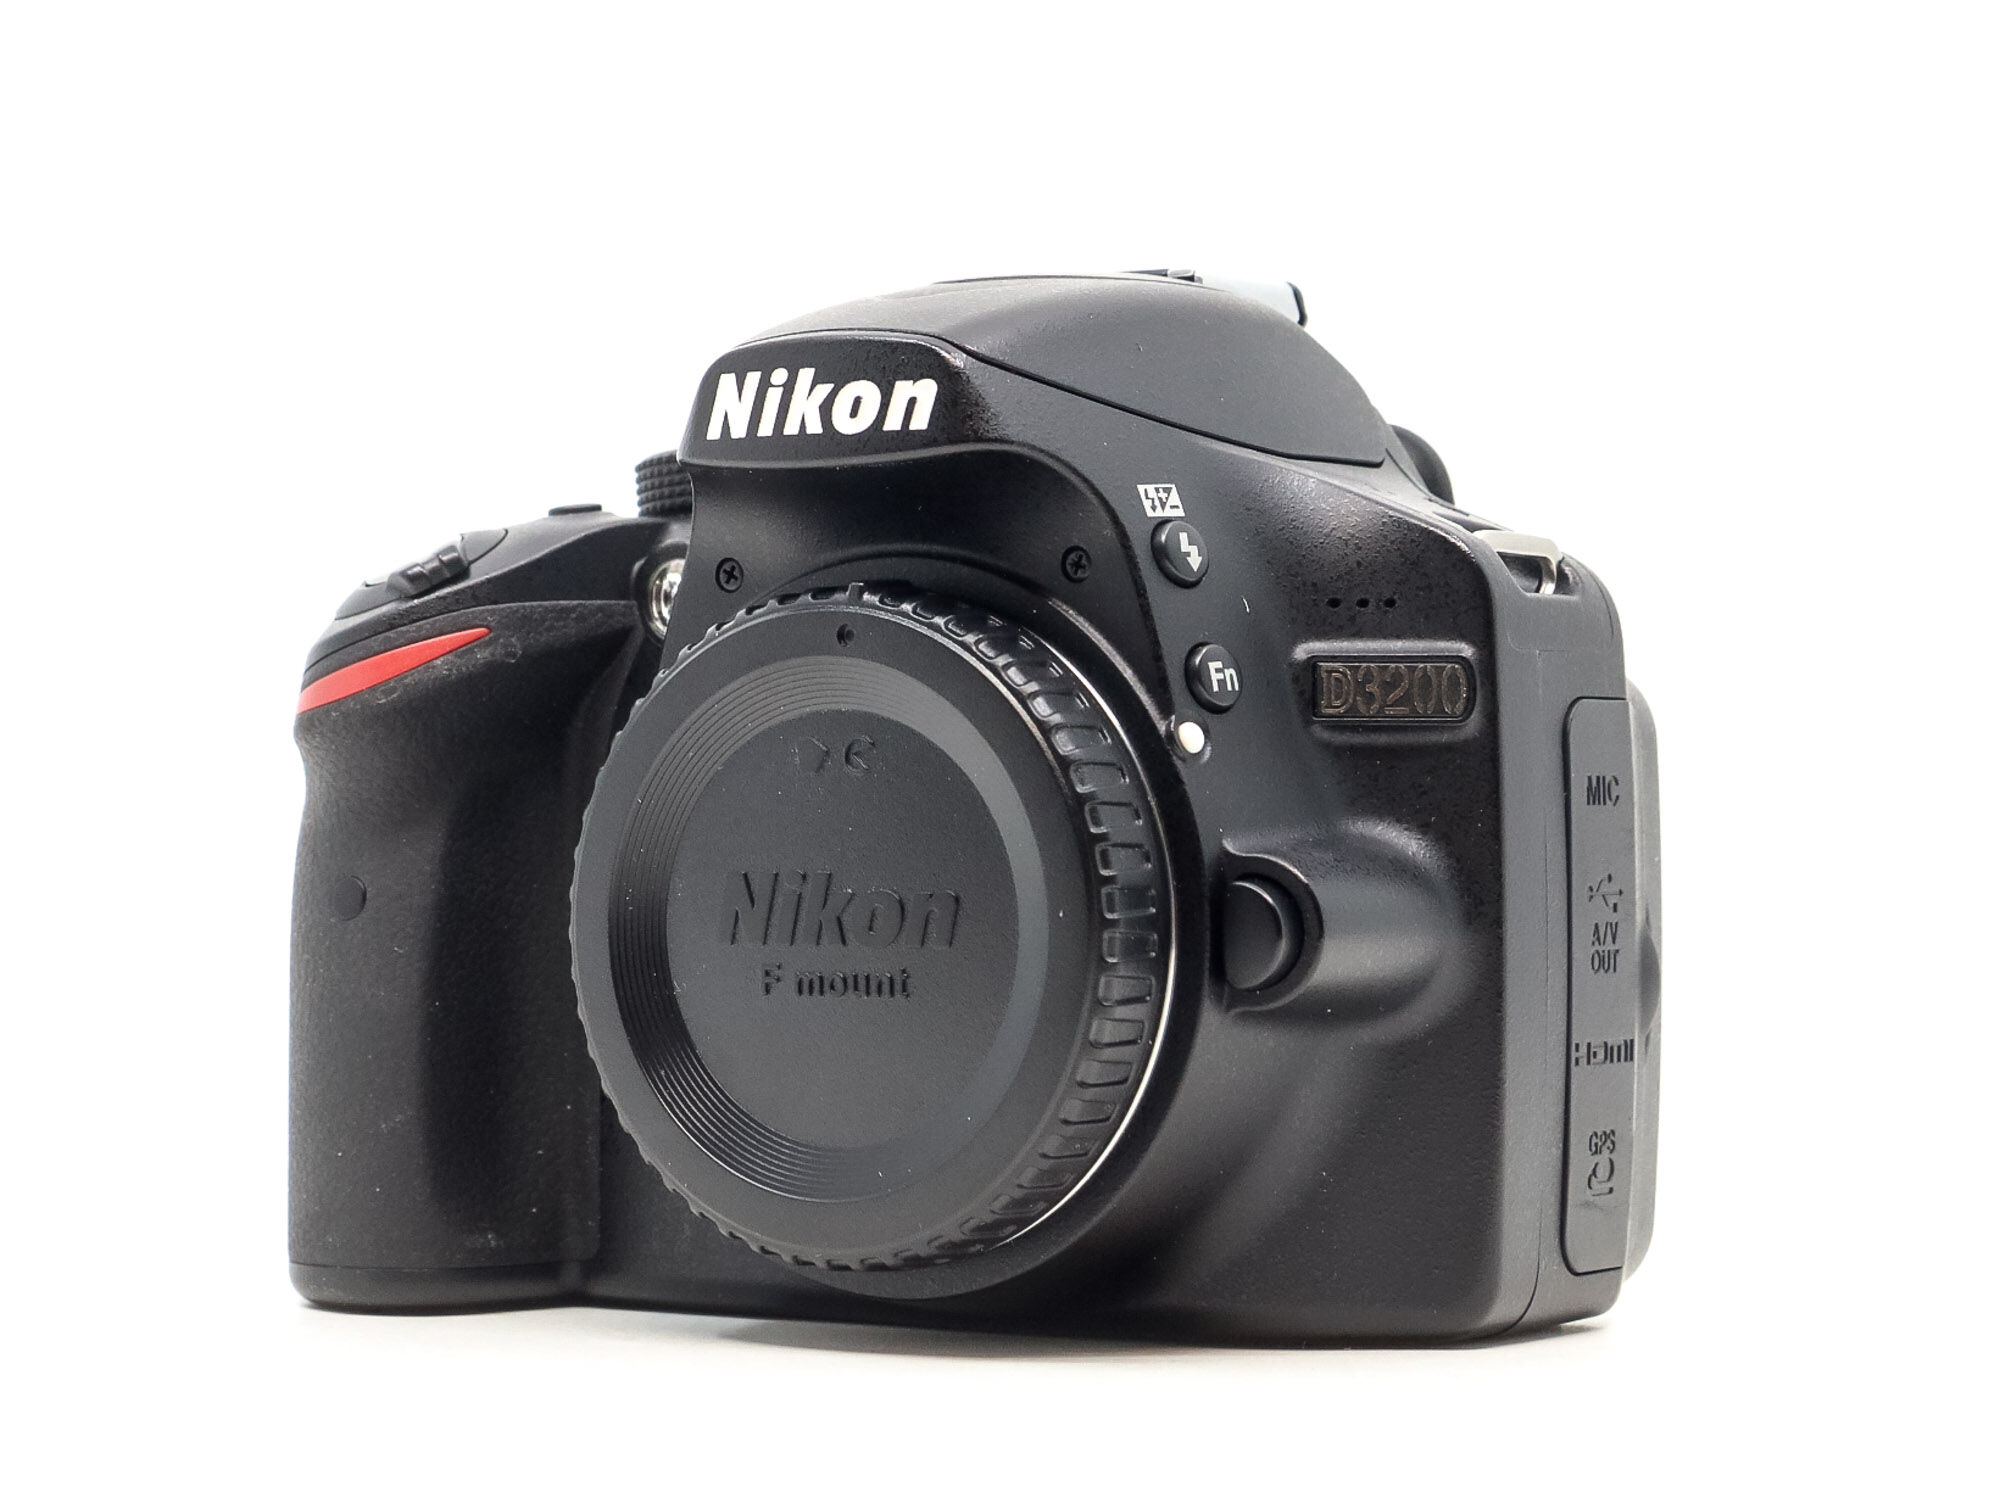 Nikon D3200 (Condition: Excellent)